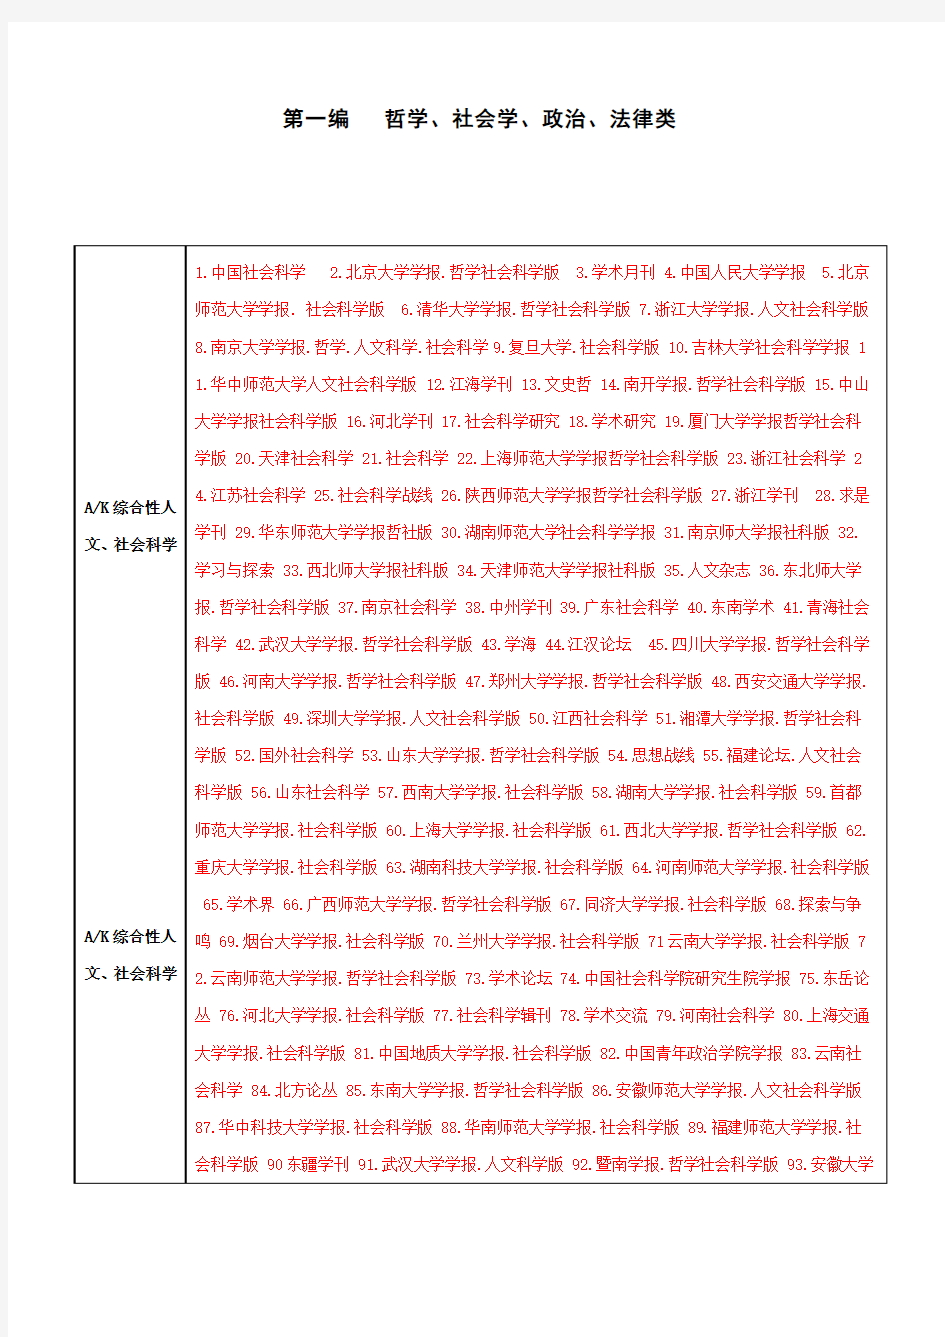 2011版北大中文核心期刊目录(第六版)